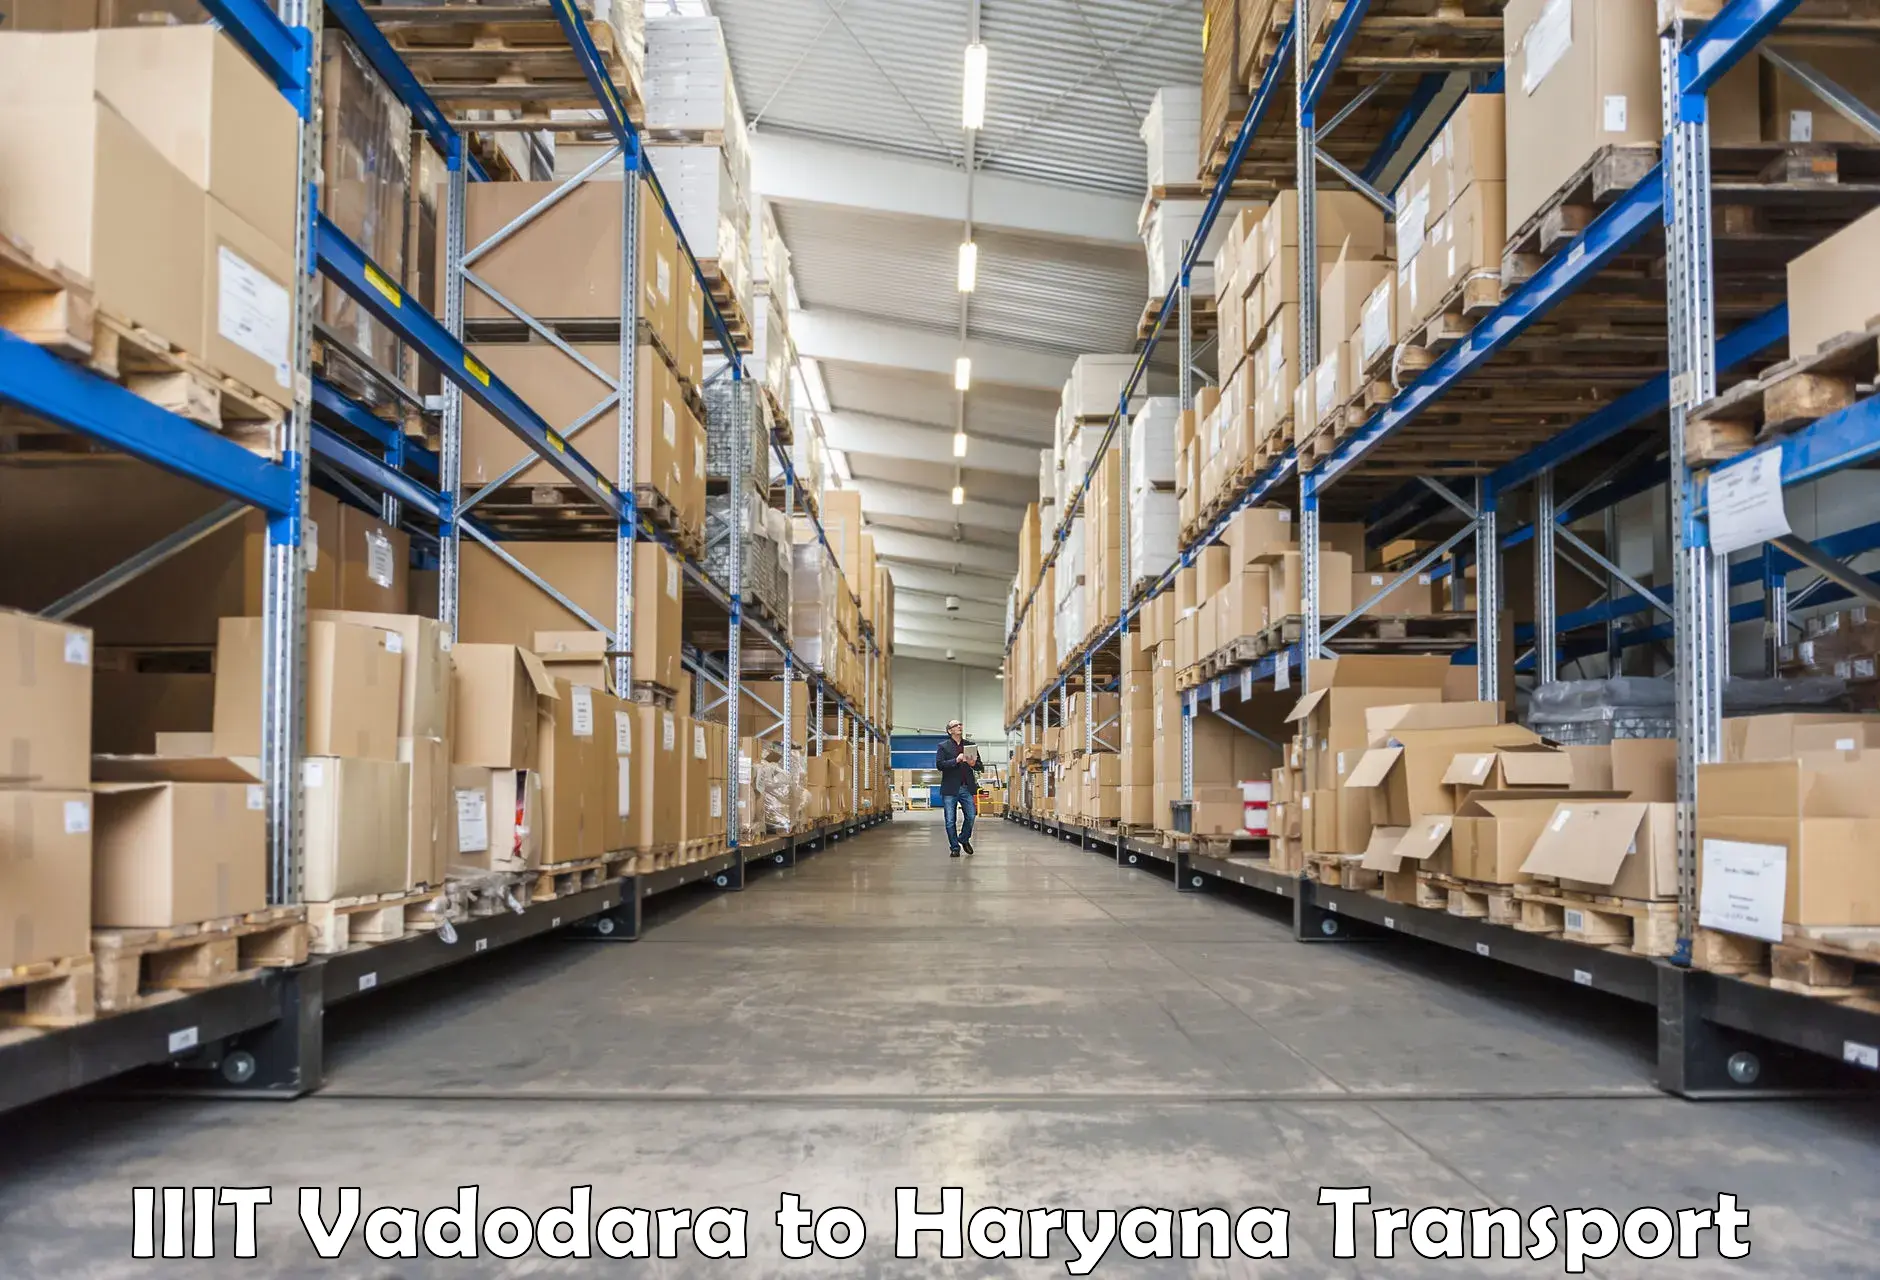 Transport in sharing in IIIT Vadodara to Haryana